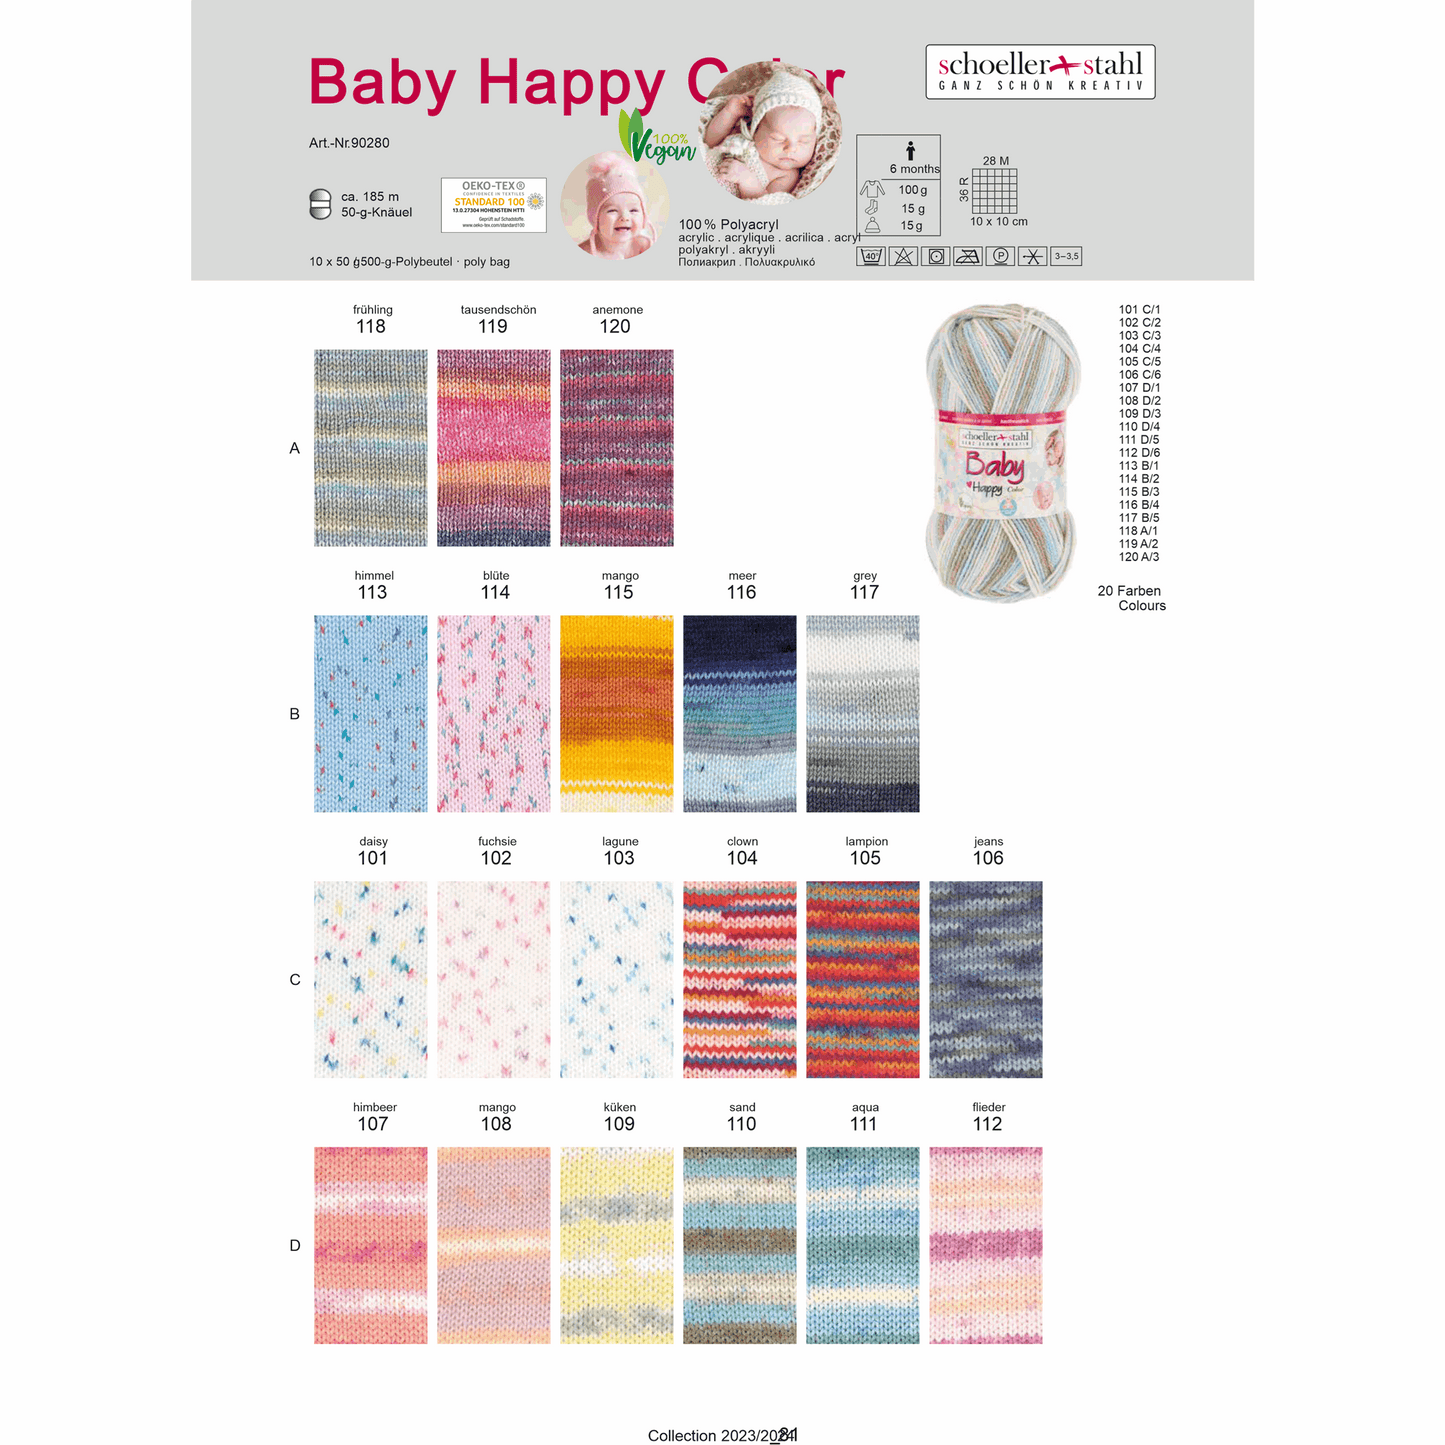 Baby happy color 50g, 90280, Farbe 112, flieder